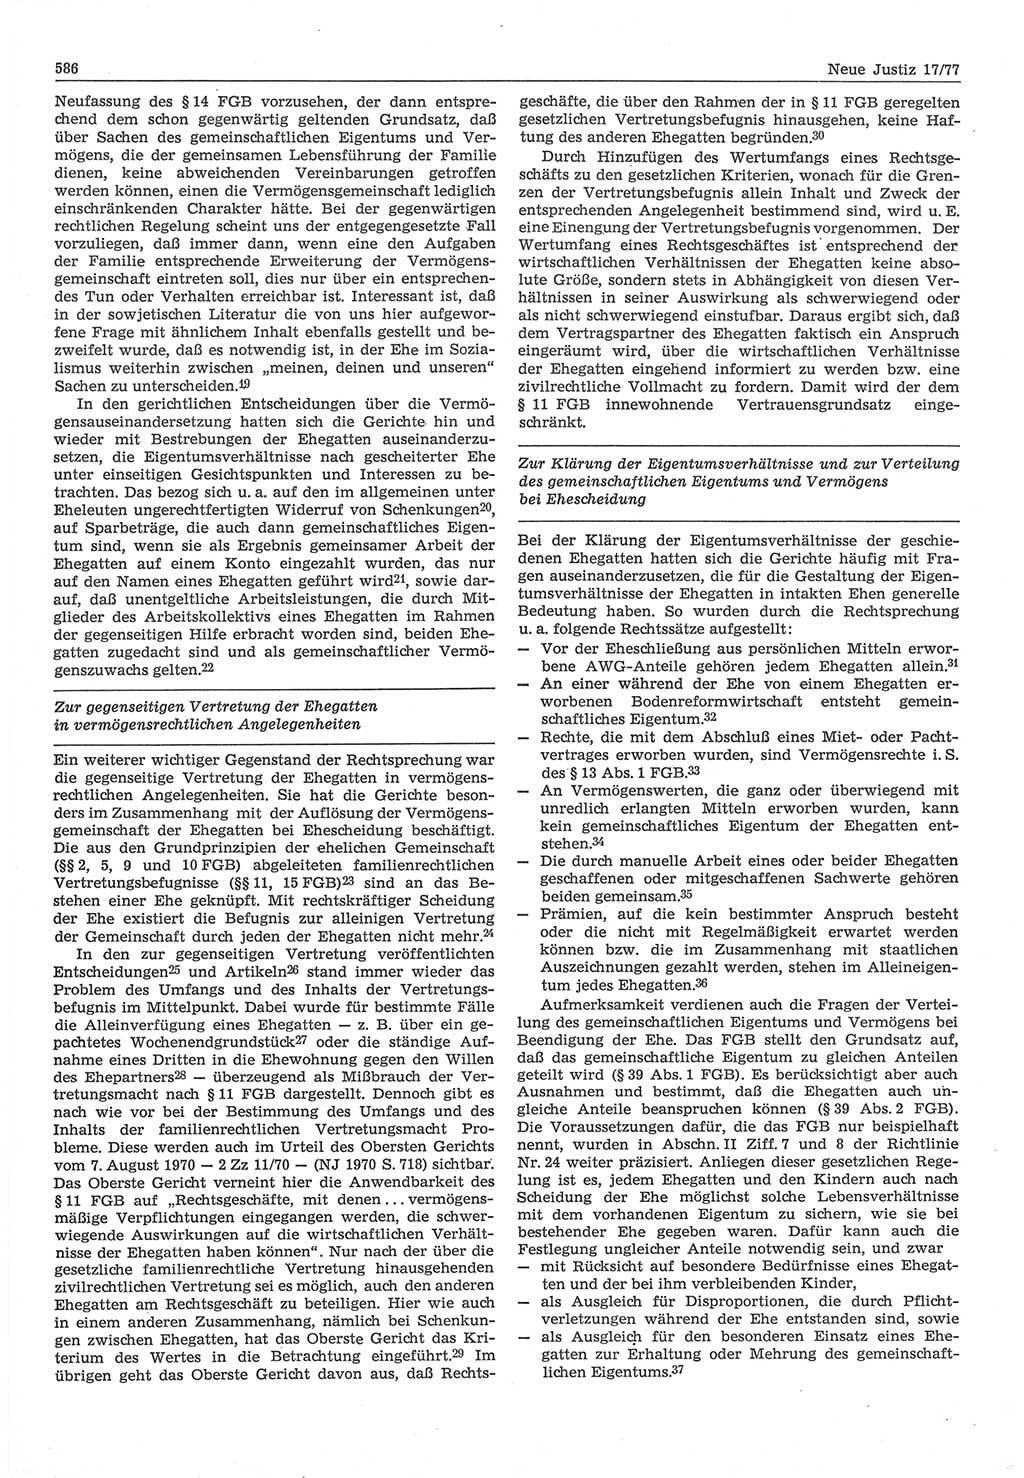 Neue Justiz (NJ), Zeitschrift für Recht und Rechtswissenschaft-Zeitschrift, sozialistisches Recht und Gesetzlichkeit, 31. Jahrgang 1977, Seite 586 (NJ DDR 1977, S. 586)